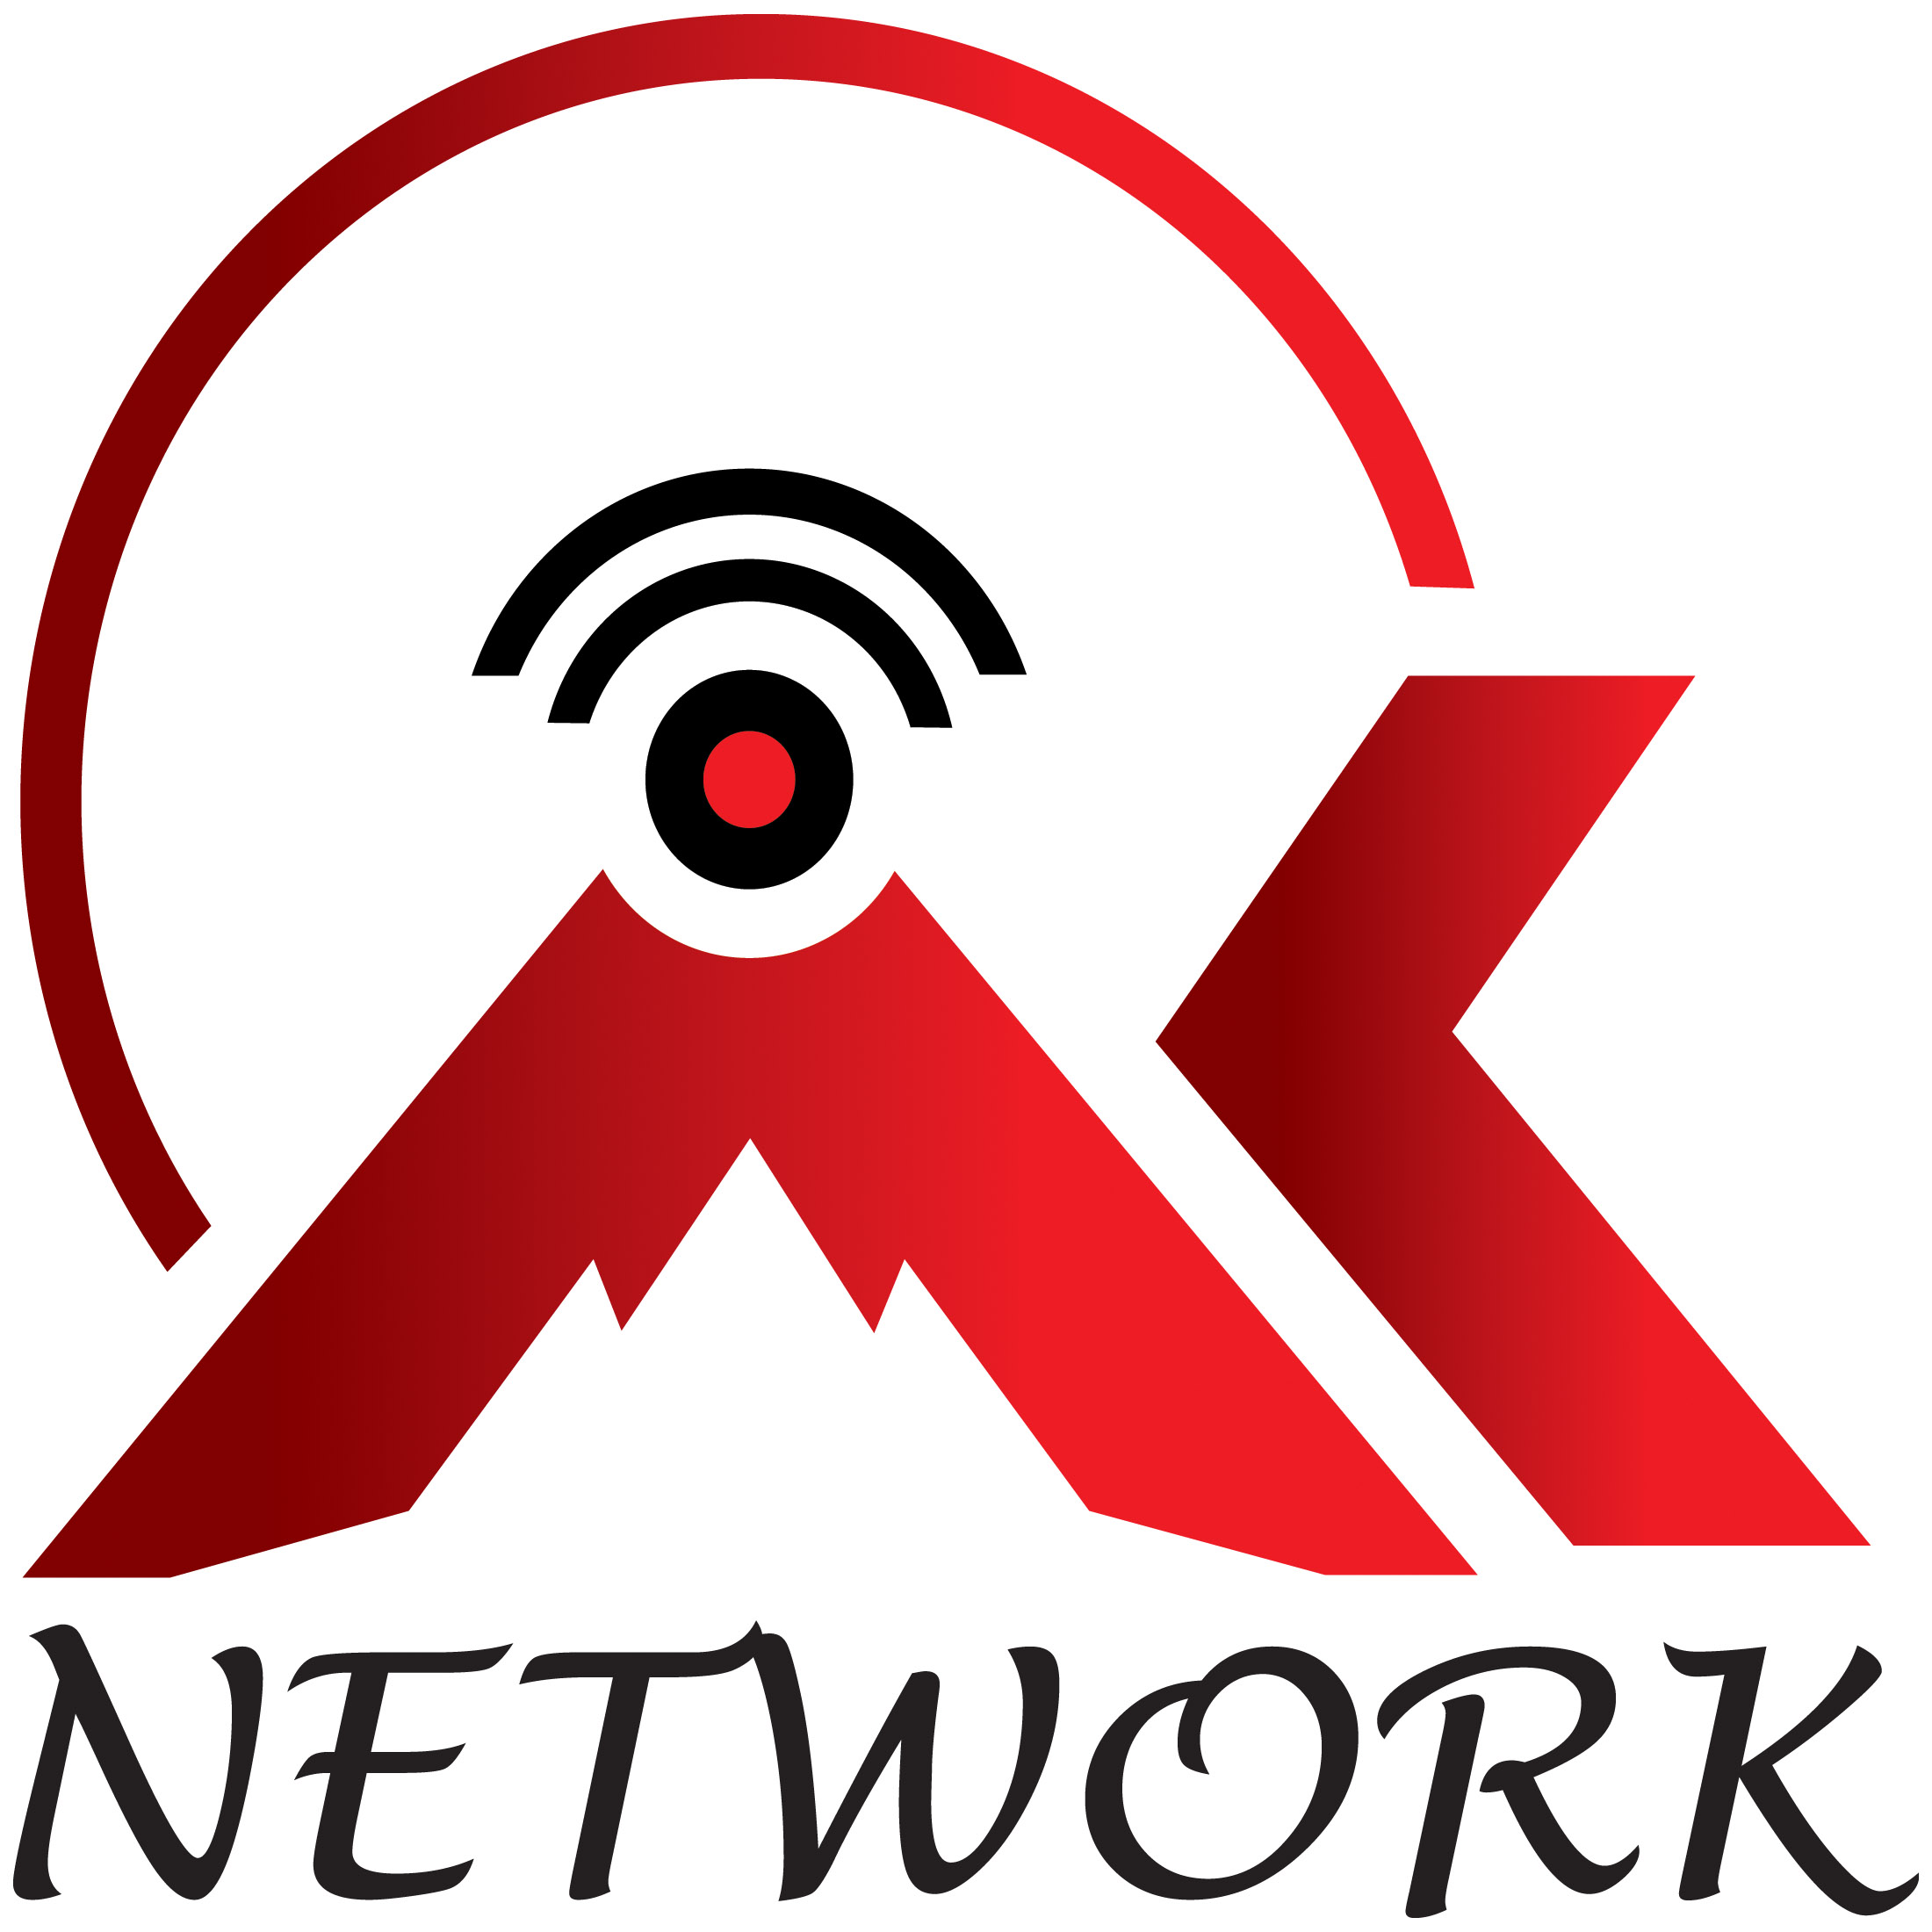   AK Network-logo